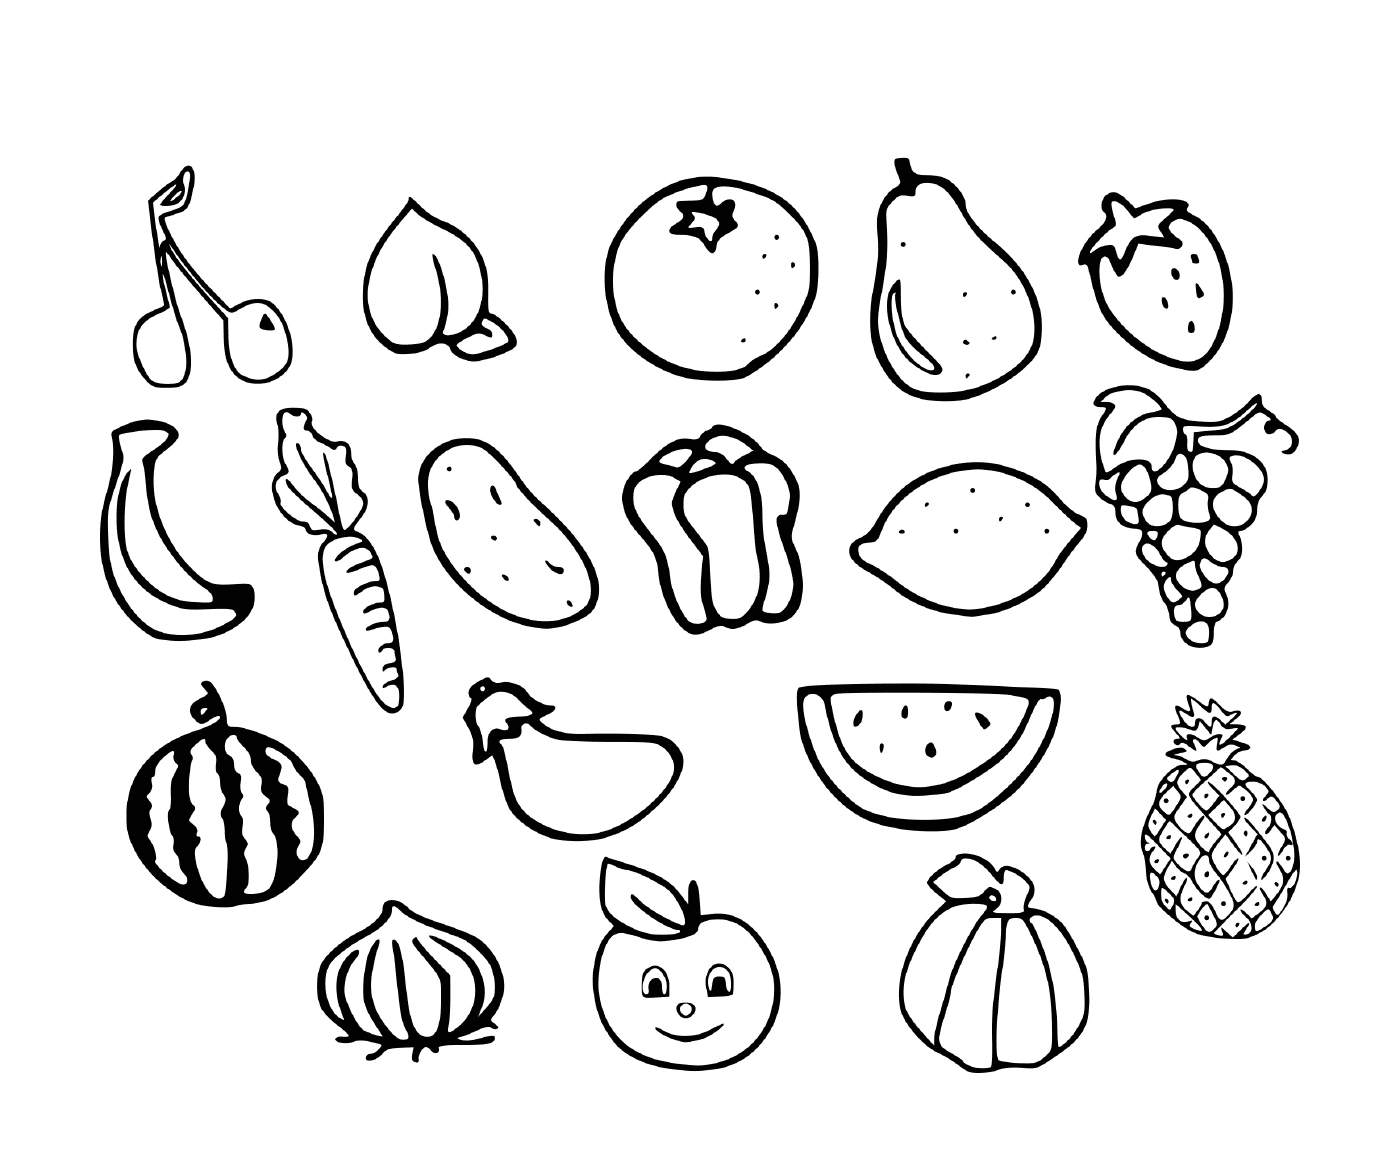  水果和蔬菜 